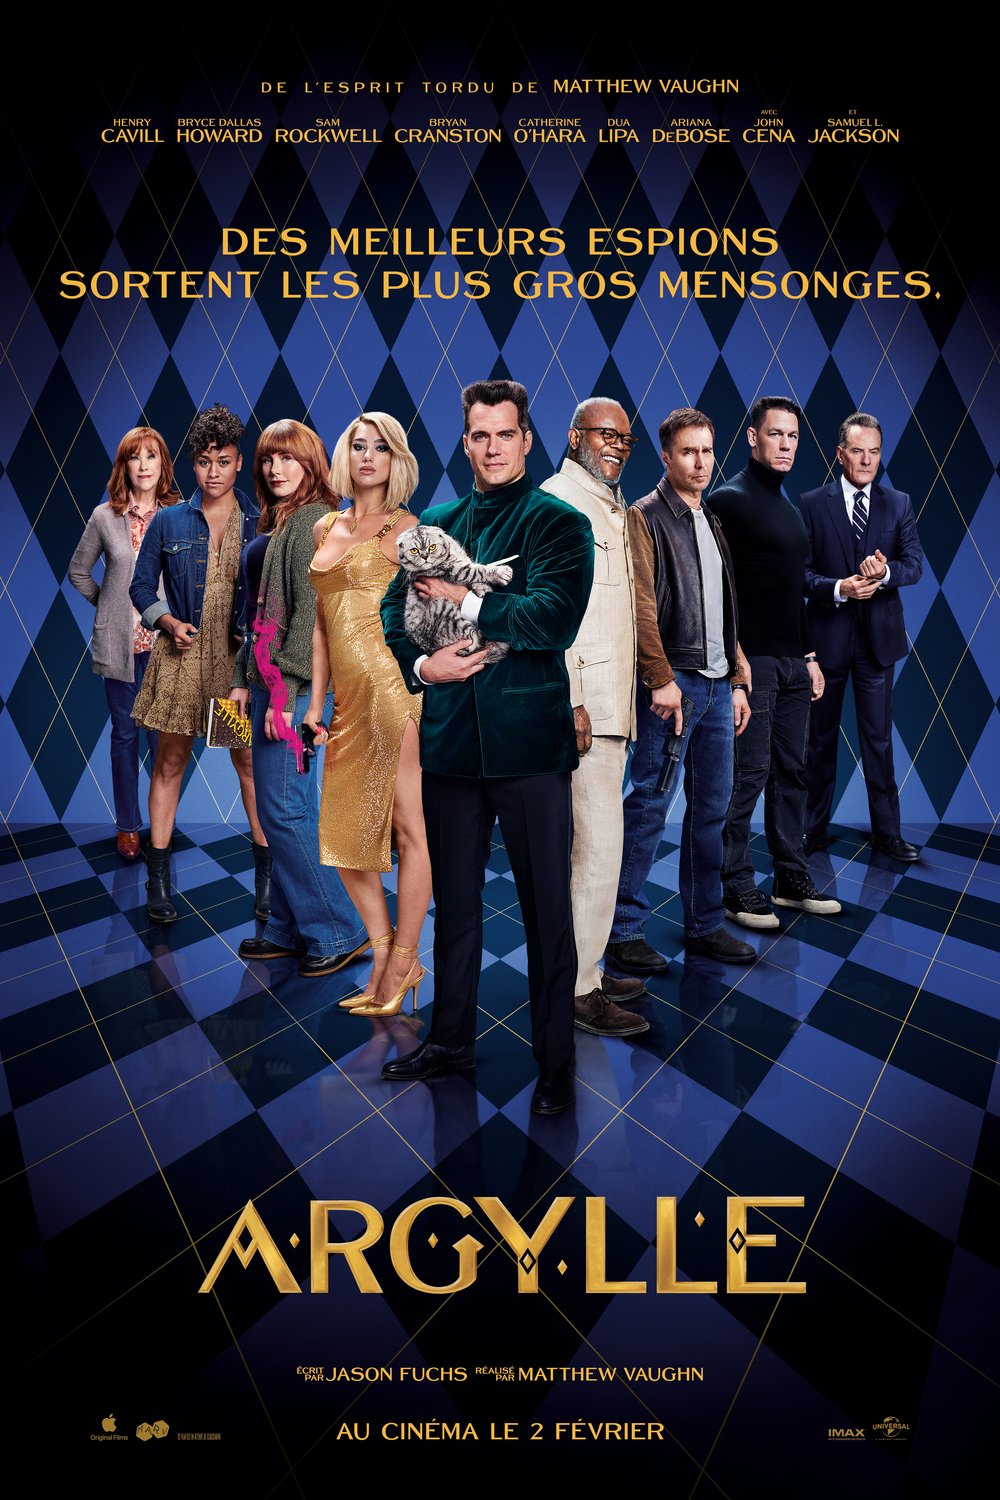 L'affiche du film Argylle v.f.